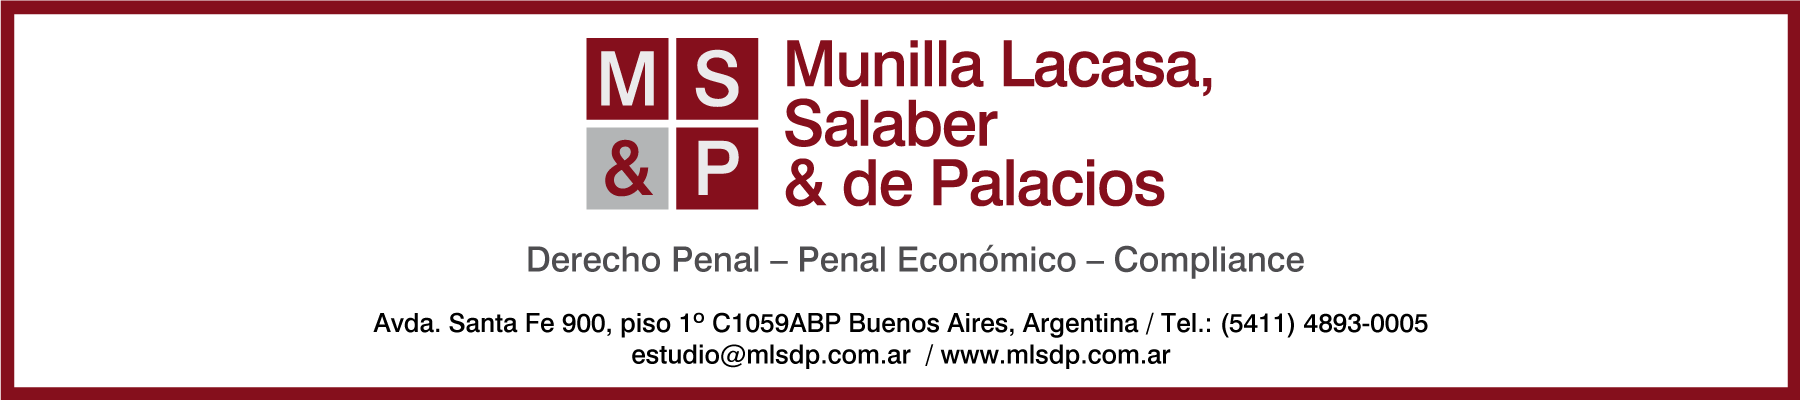 Munilla Lacasa, Salaver & de Palacios